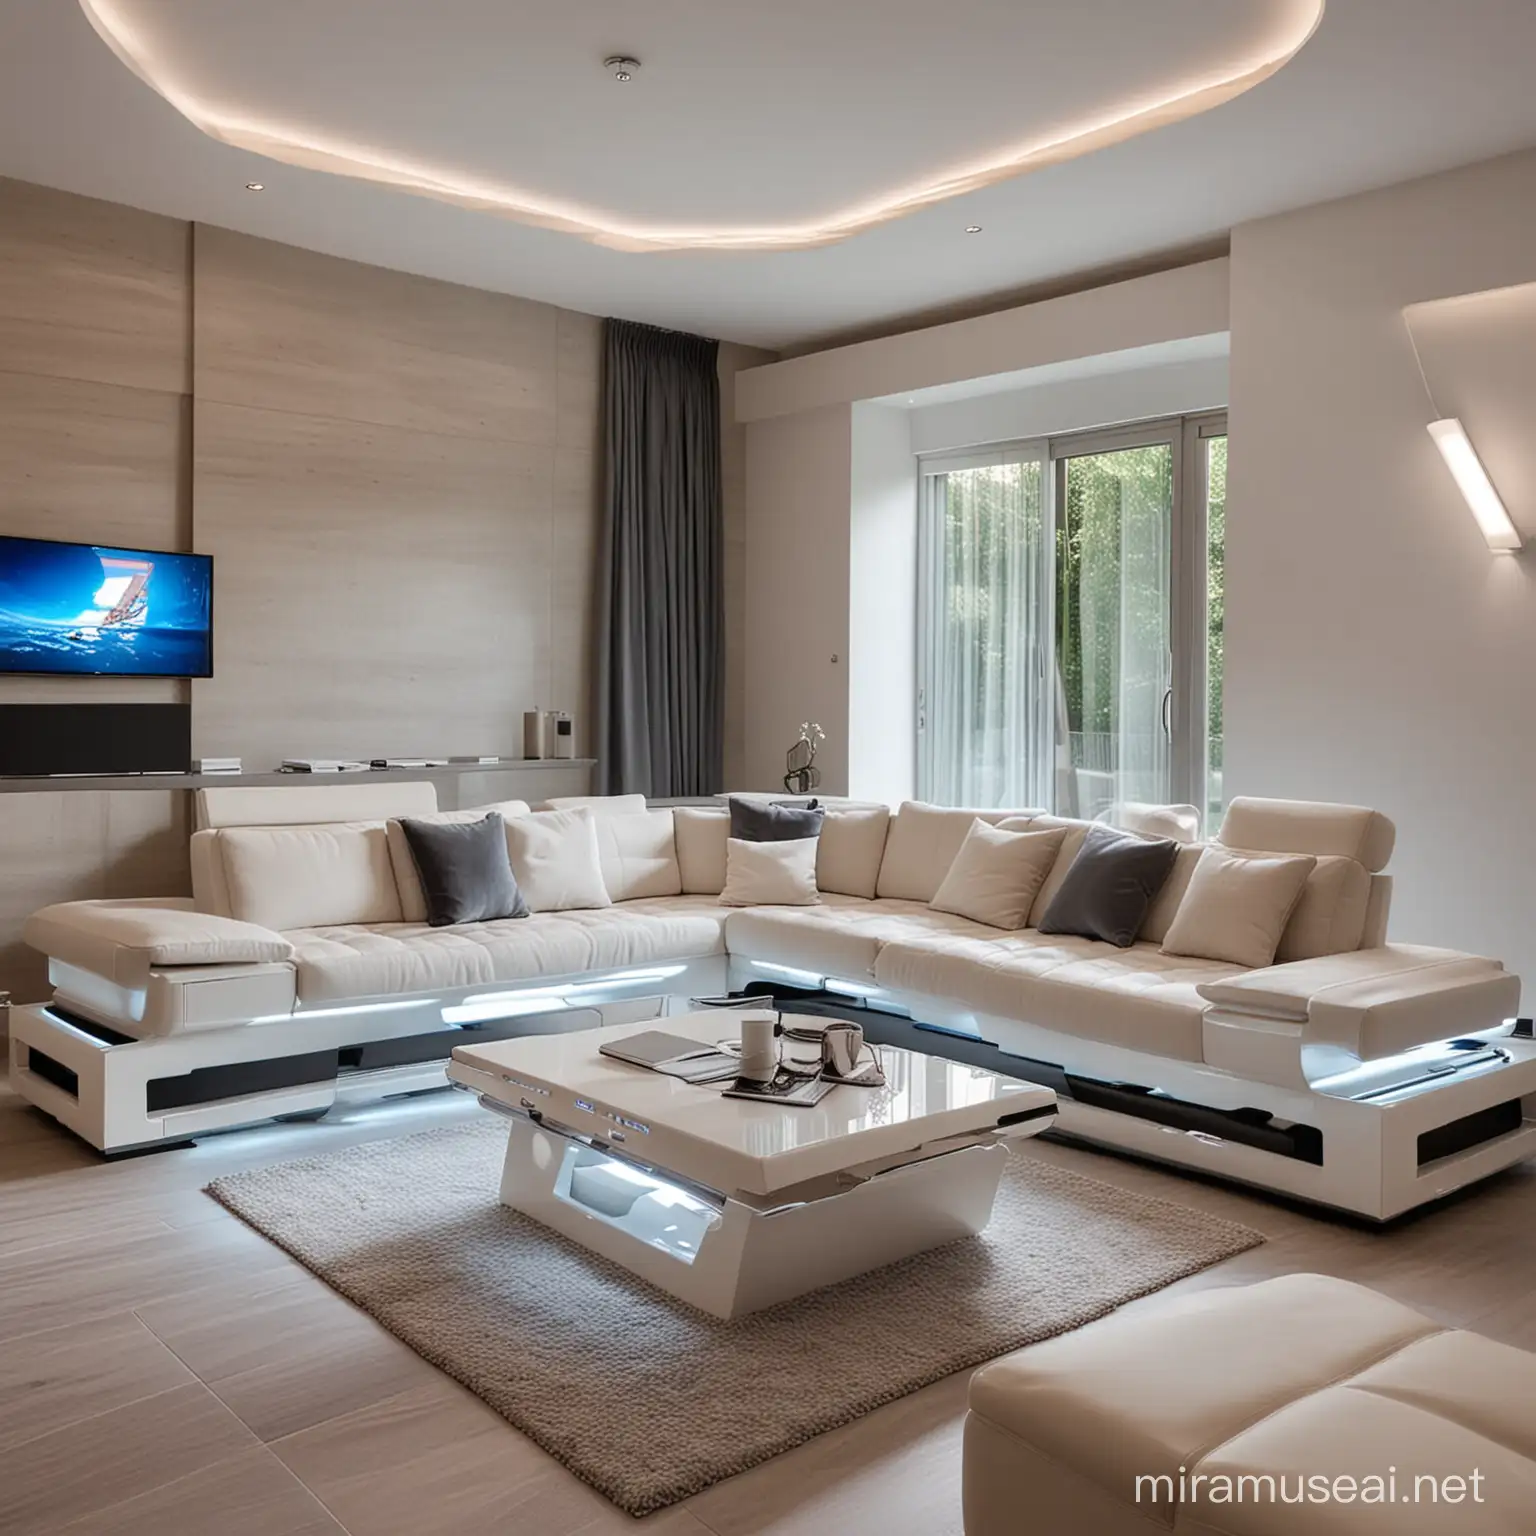 Futuristic Modular Sofa Design in Modern Villa Interior